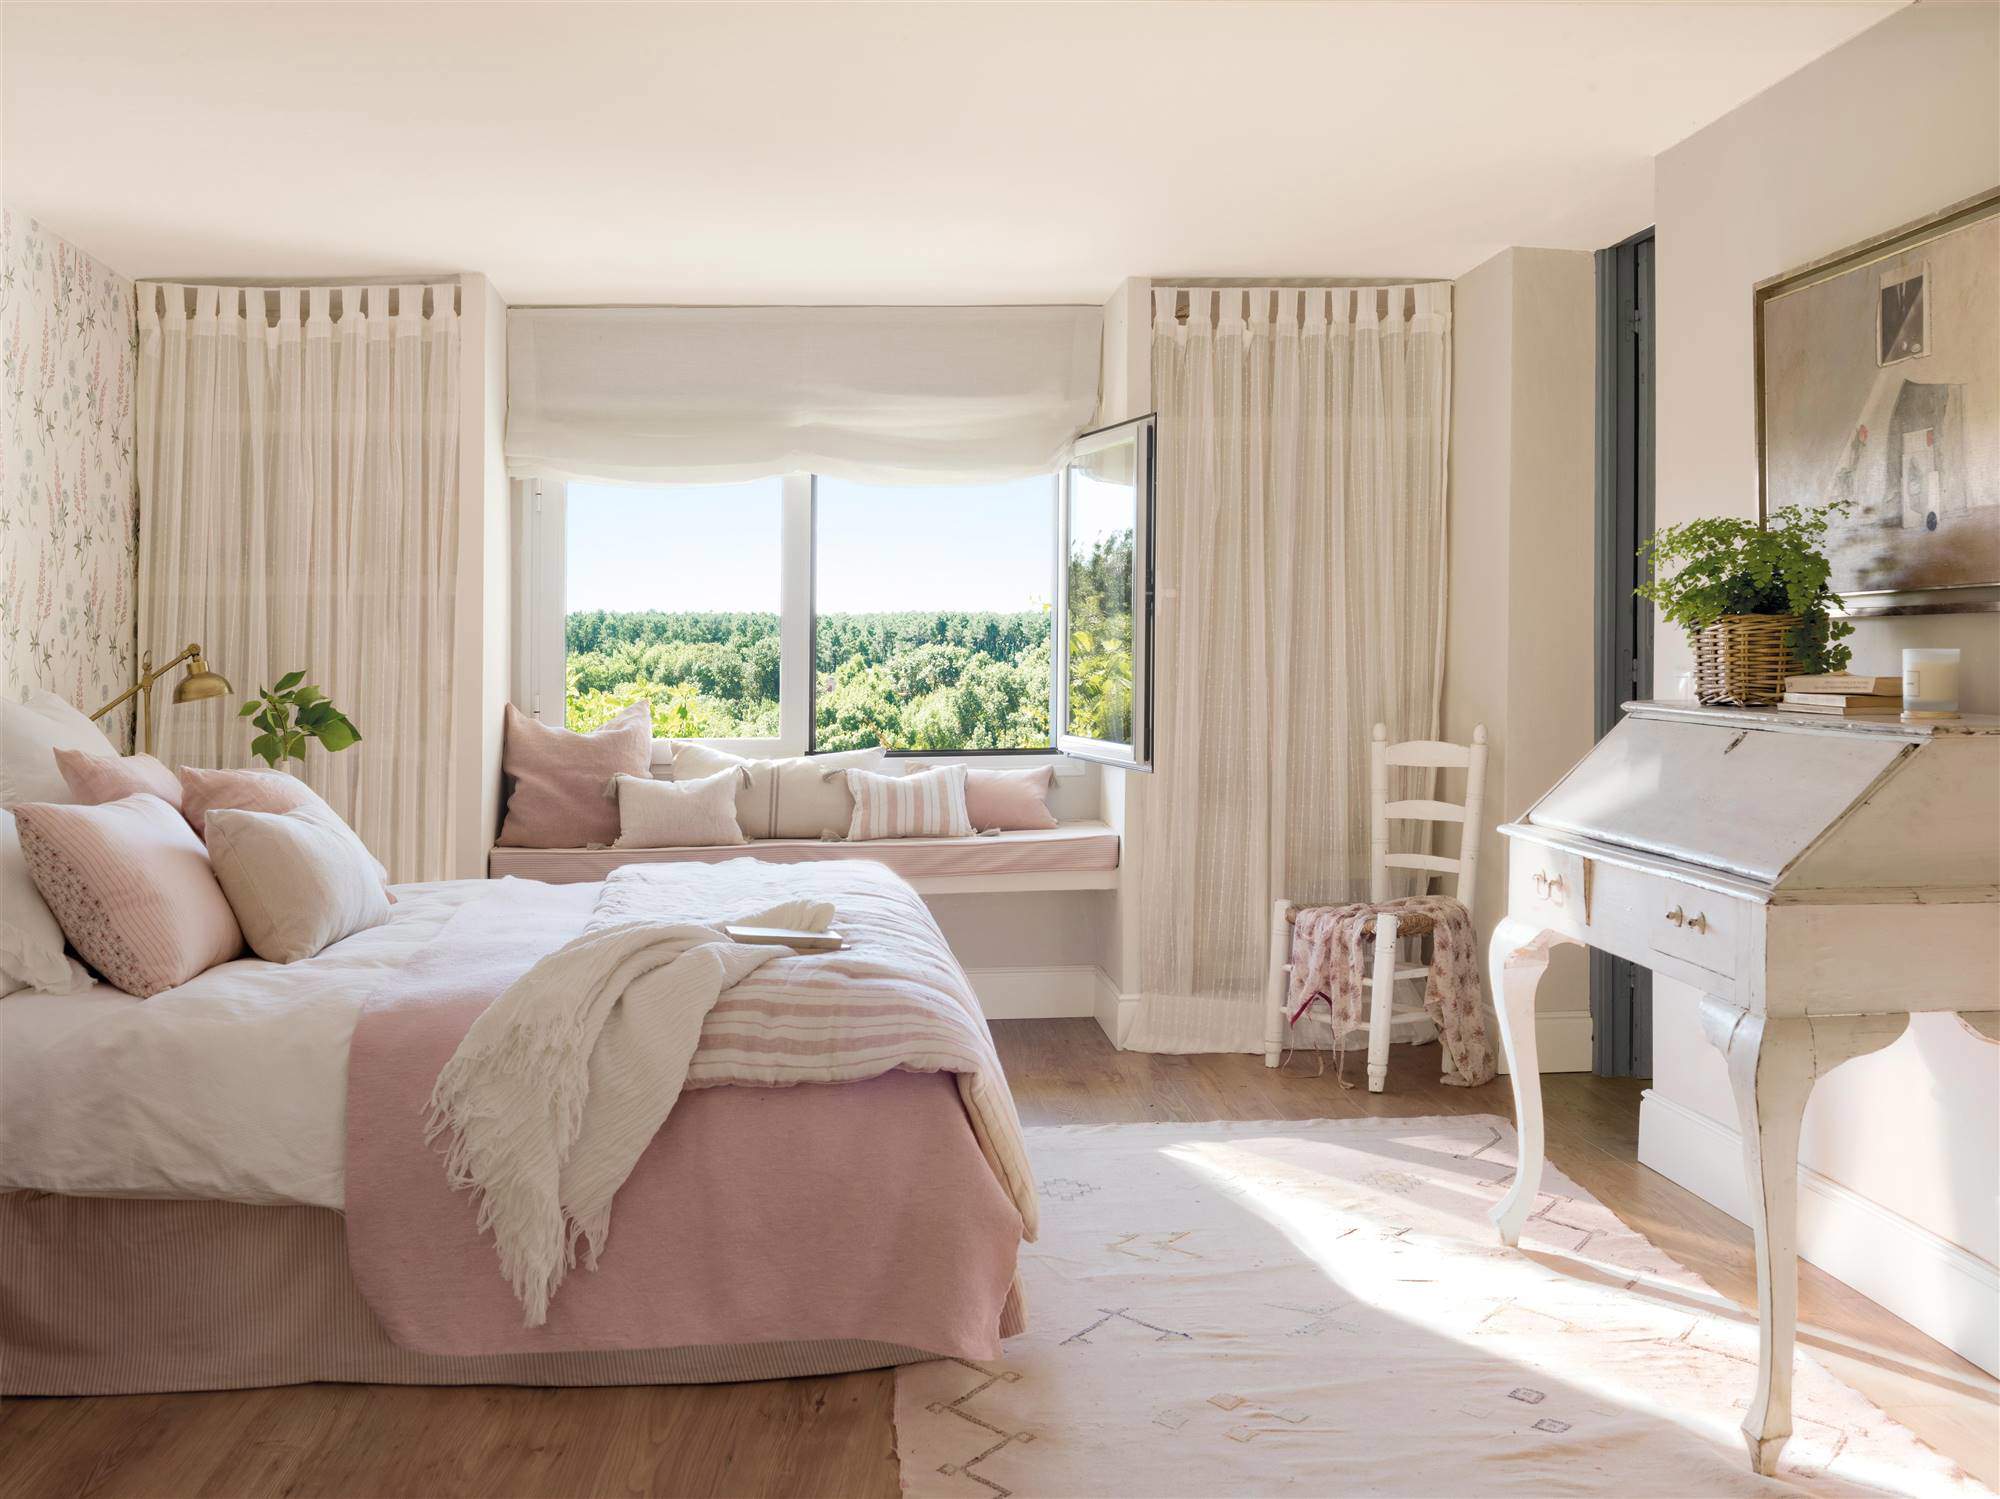 Dormitorio en tonos rosas con banco mirador